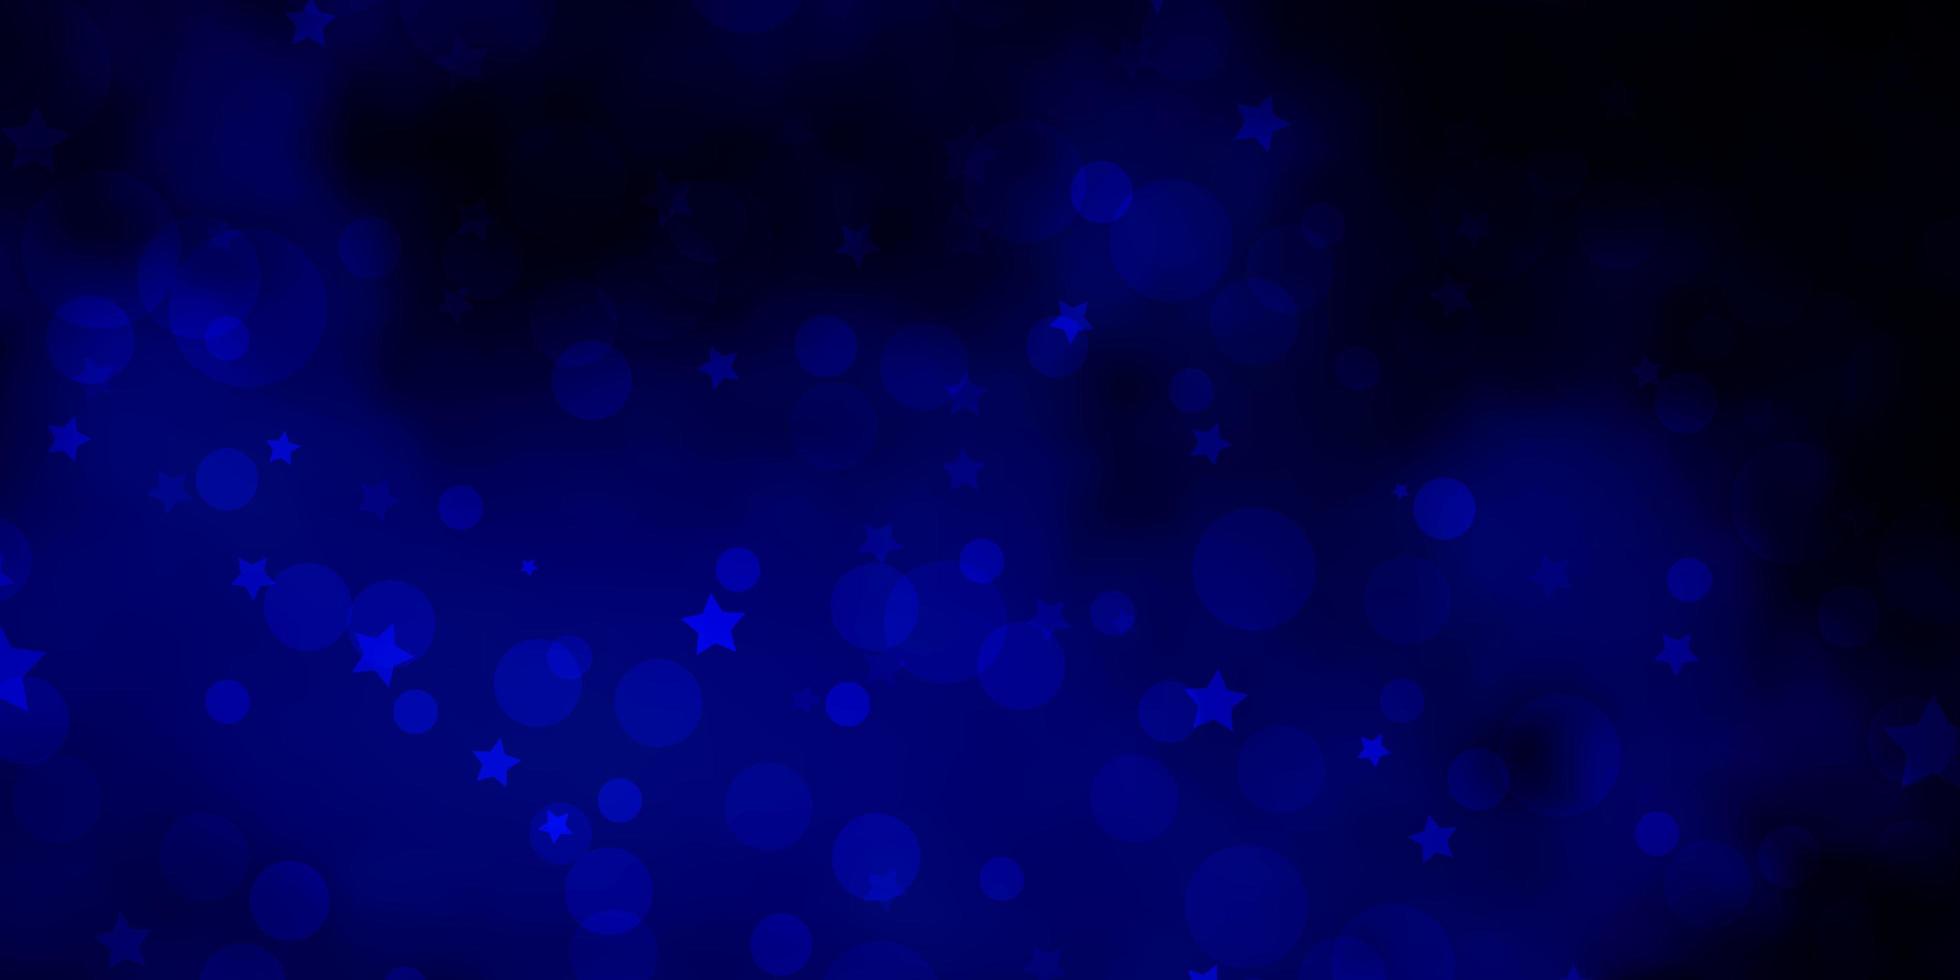 sfondo vettoriale blu scuro con cerchi, stelle.